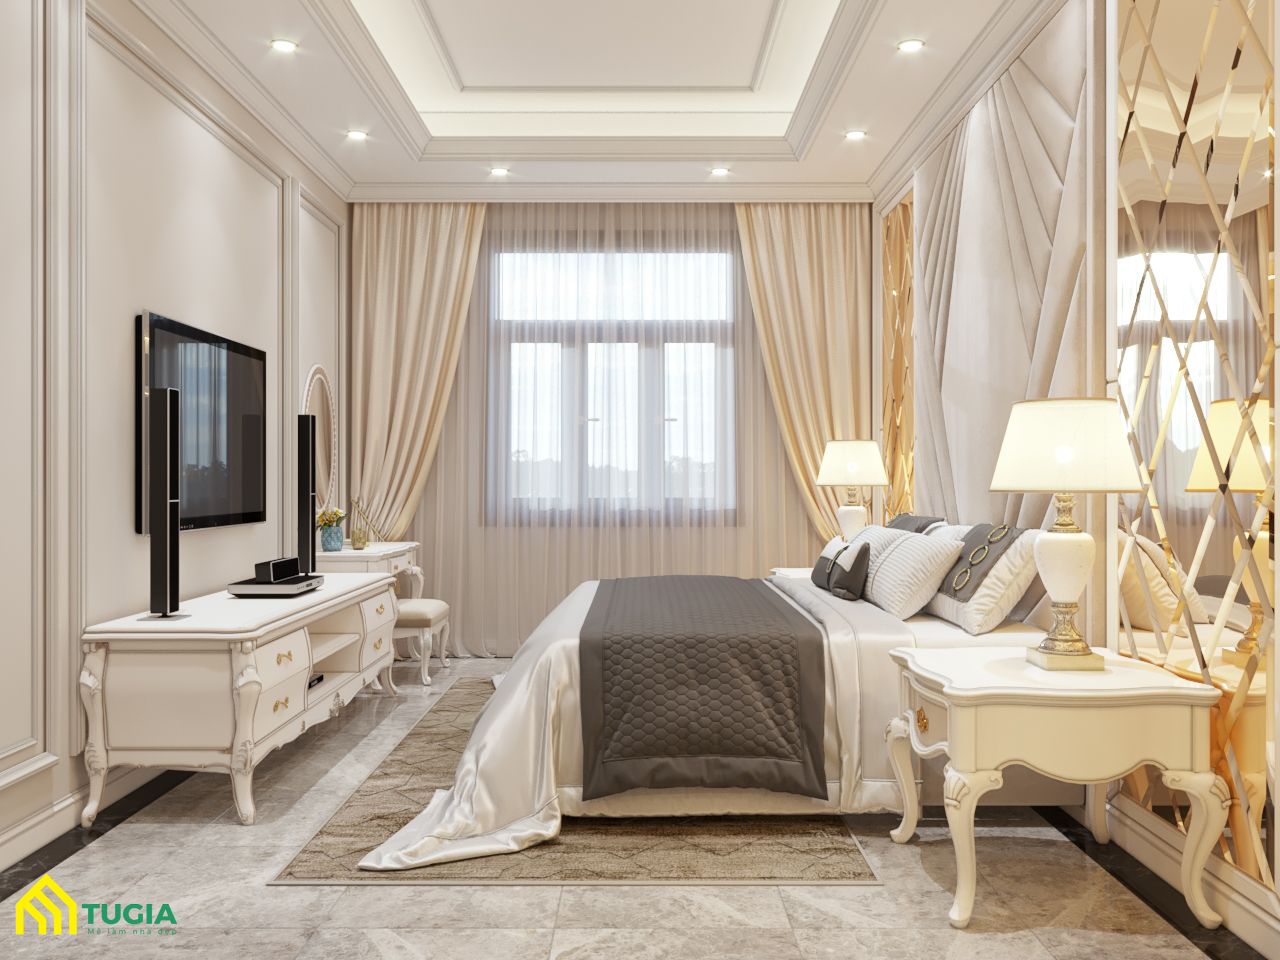 Phòng ngủ tân cổ điển nhà ống với gam màu trắng, vàng ấm áp, tinh tế